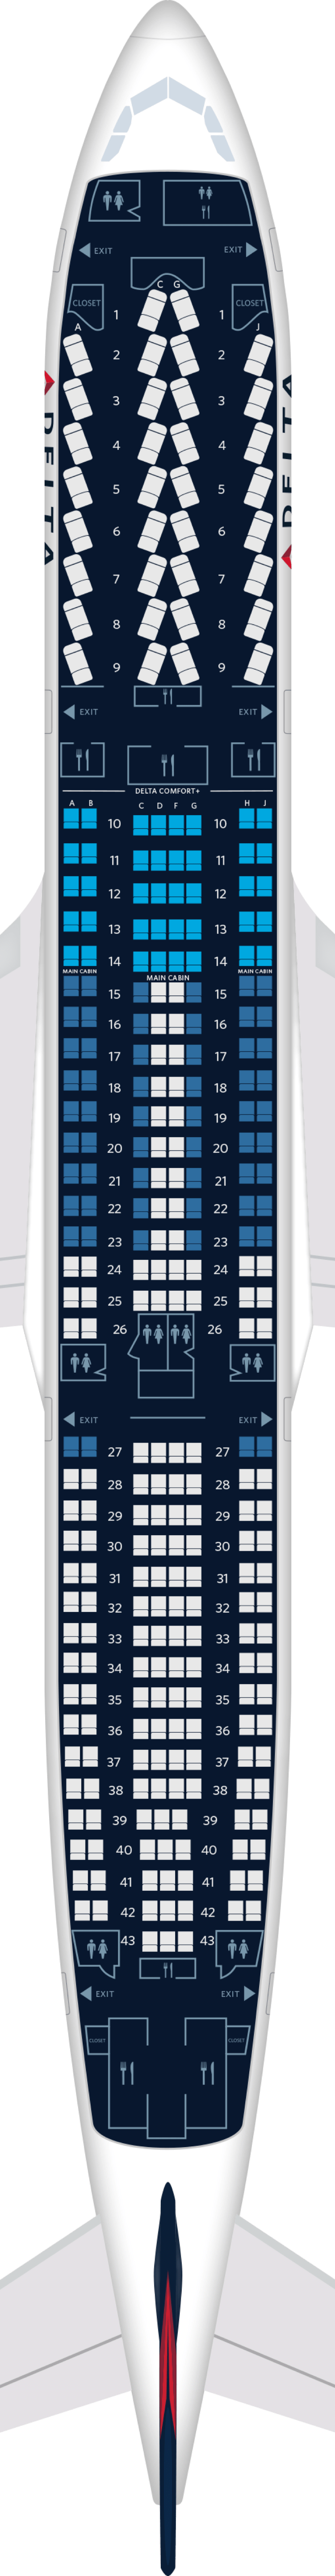 332飞机座位图图片